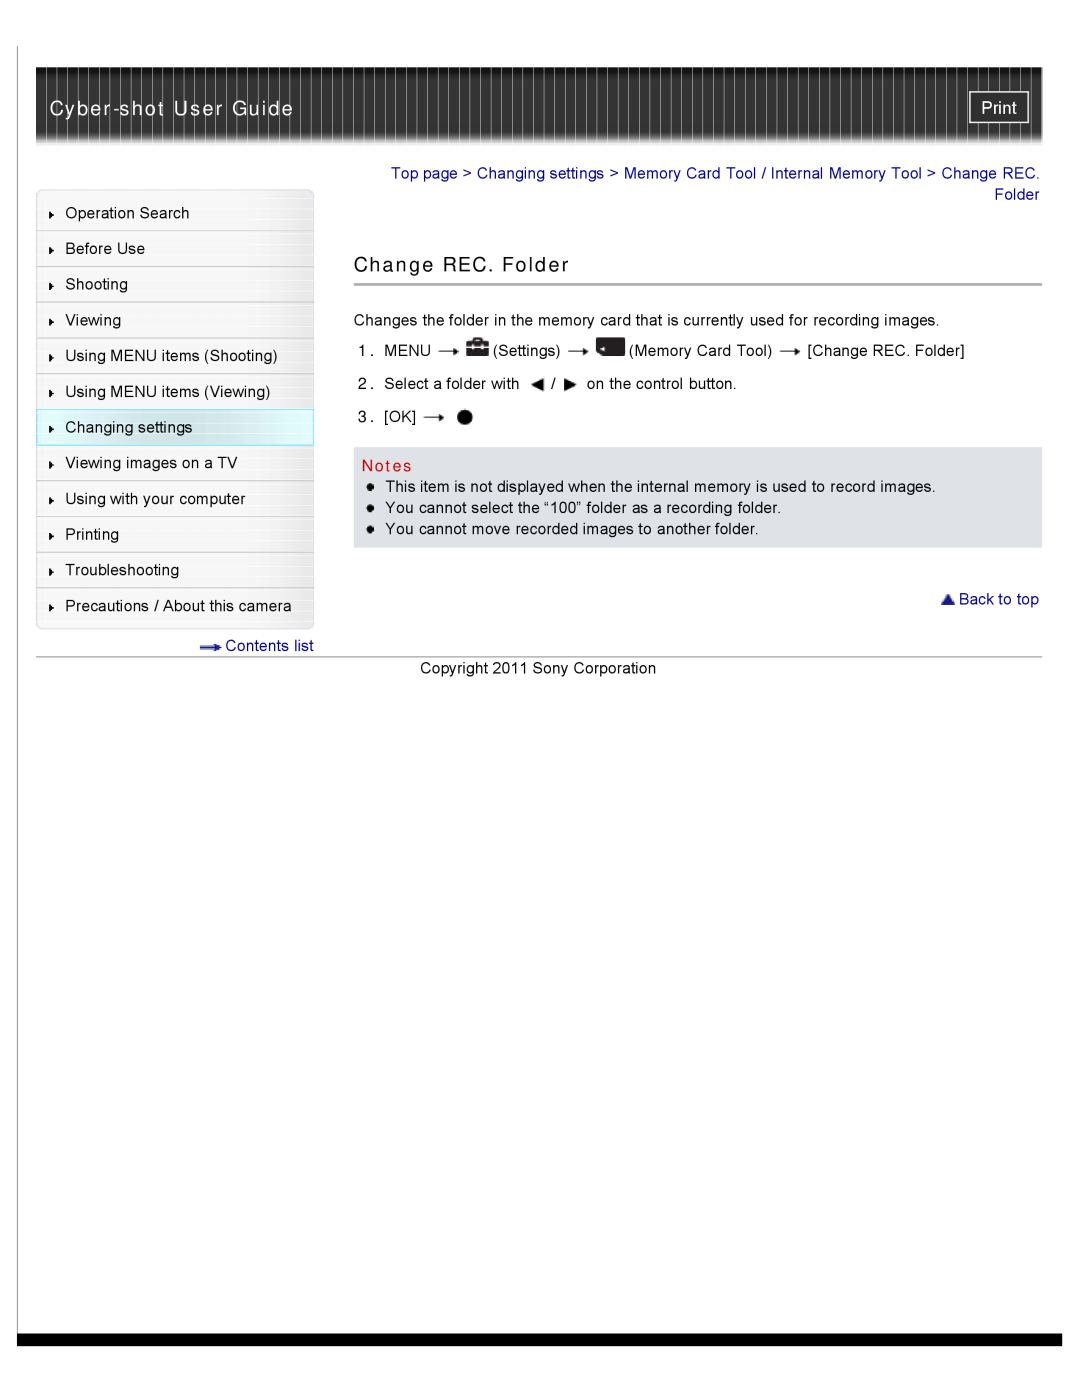 Sony DSC-W510 manual Change REC. Folder, Cyber-shot User Guide, Print, Back to top 